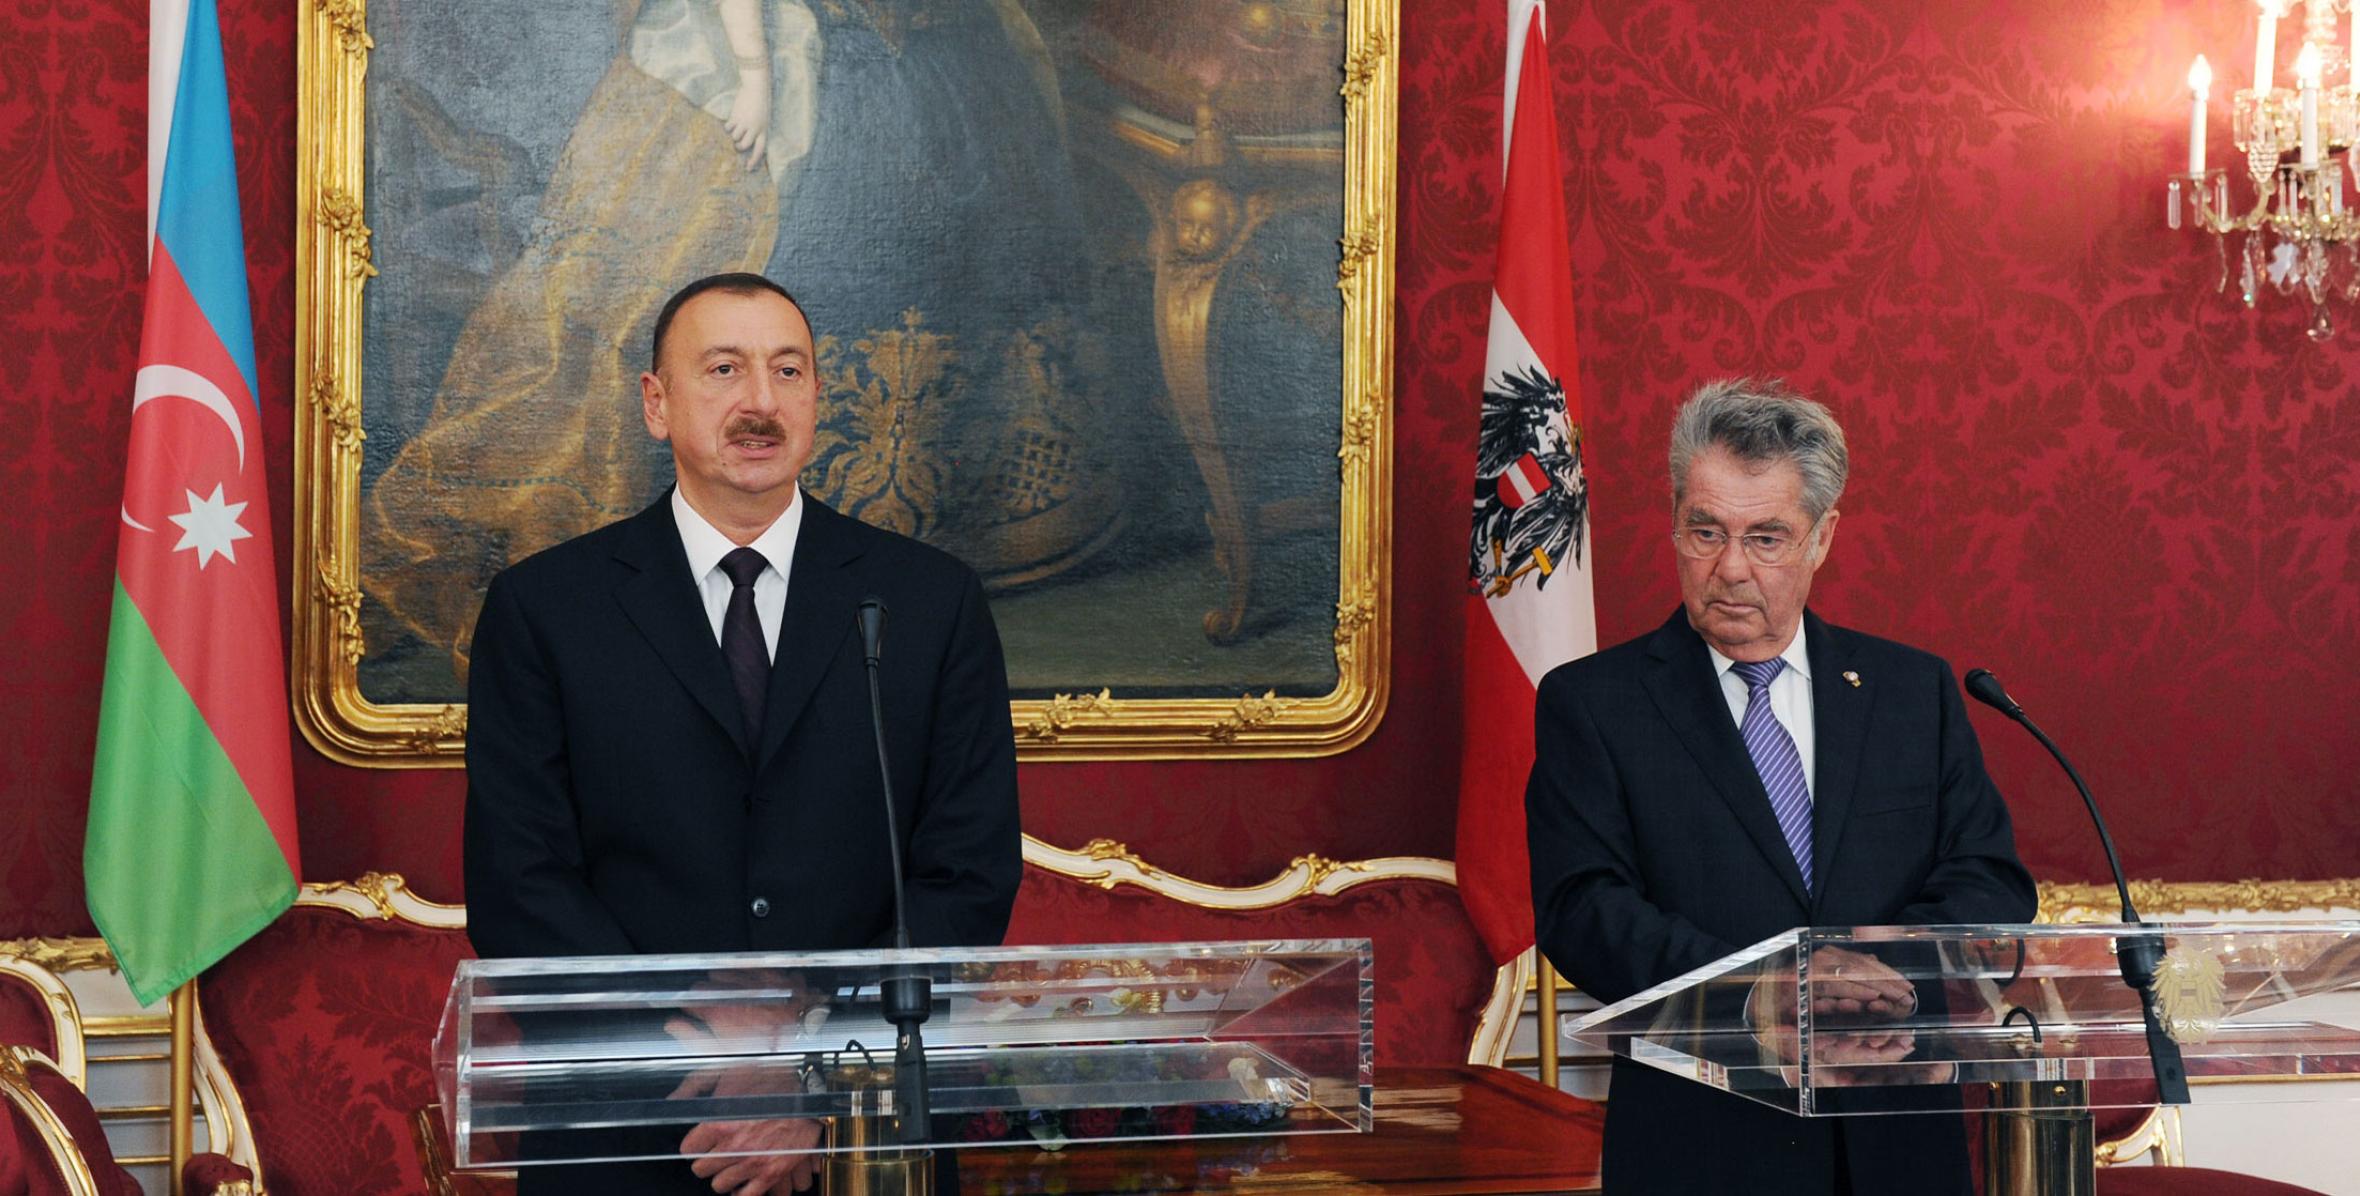 Состоялась пресс-конференция президентов Азербайджана и Австрии